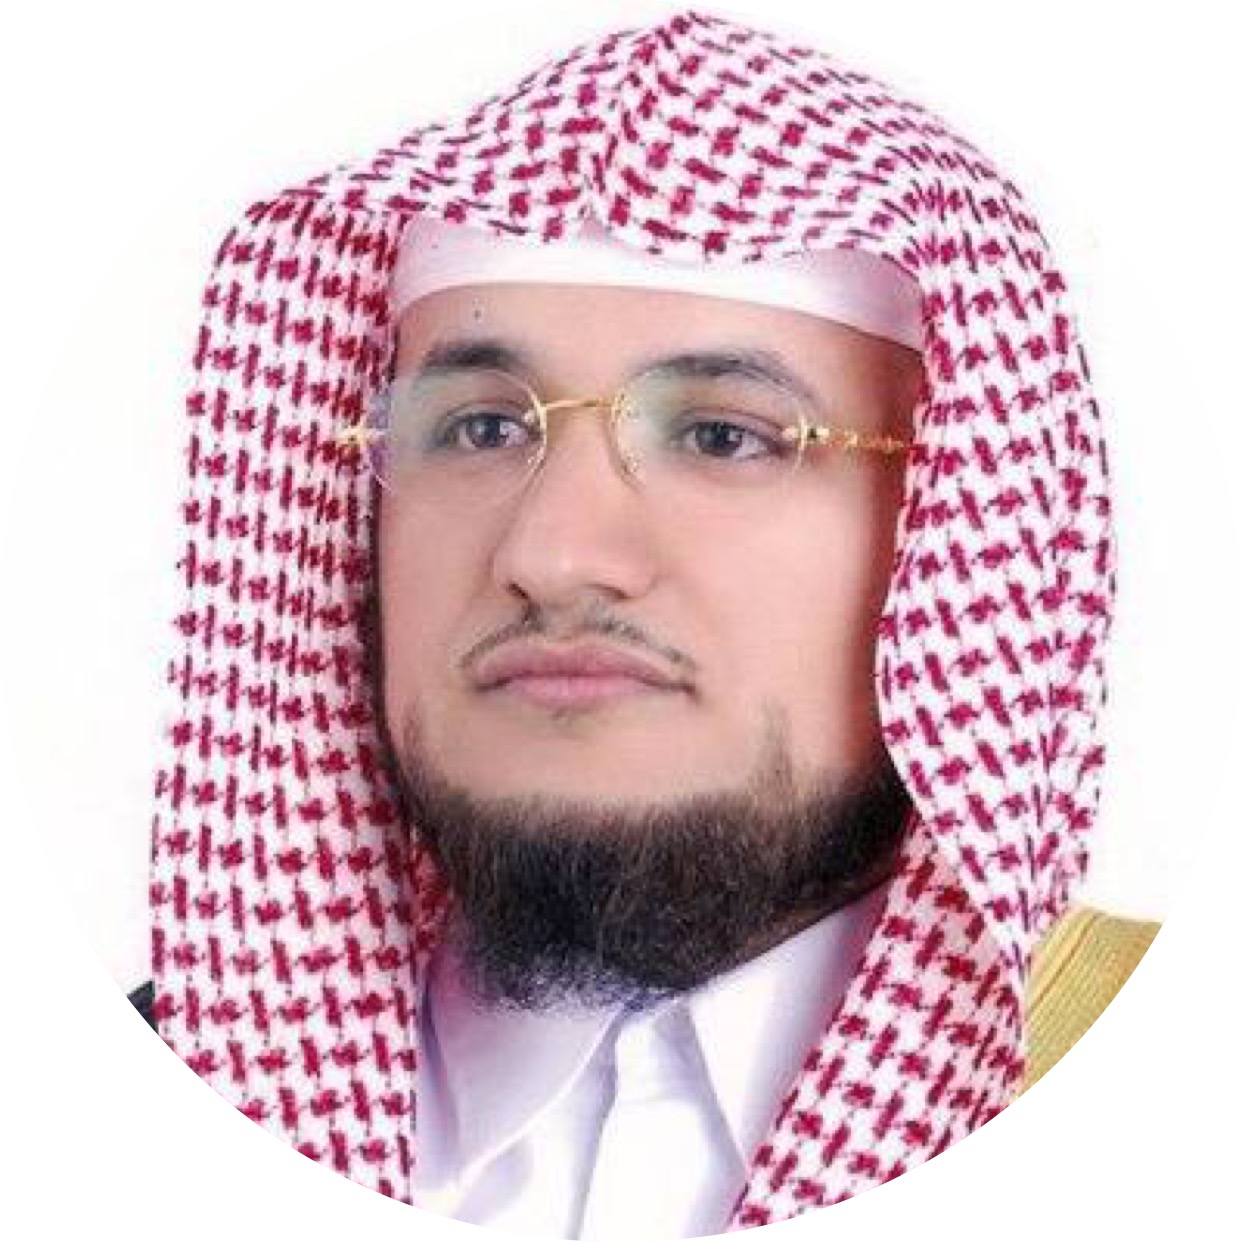 علي الربيعي: أعتذر لأهل الكويت وما حدث سوء فهم